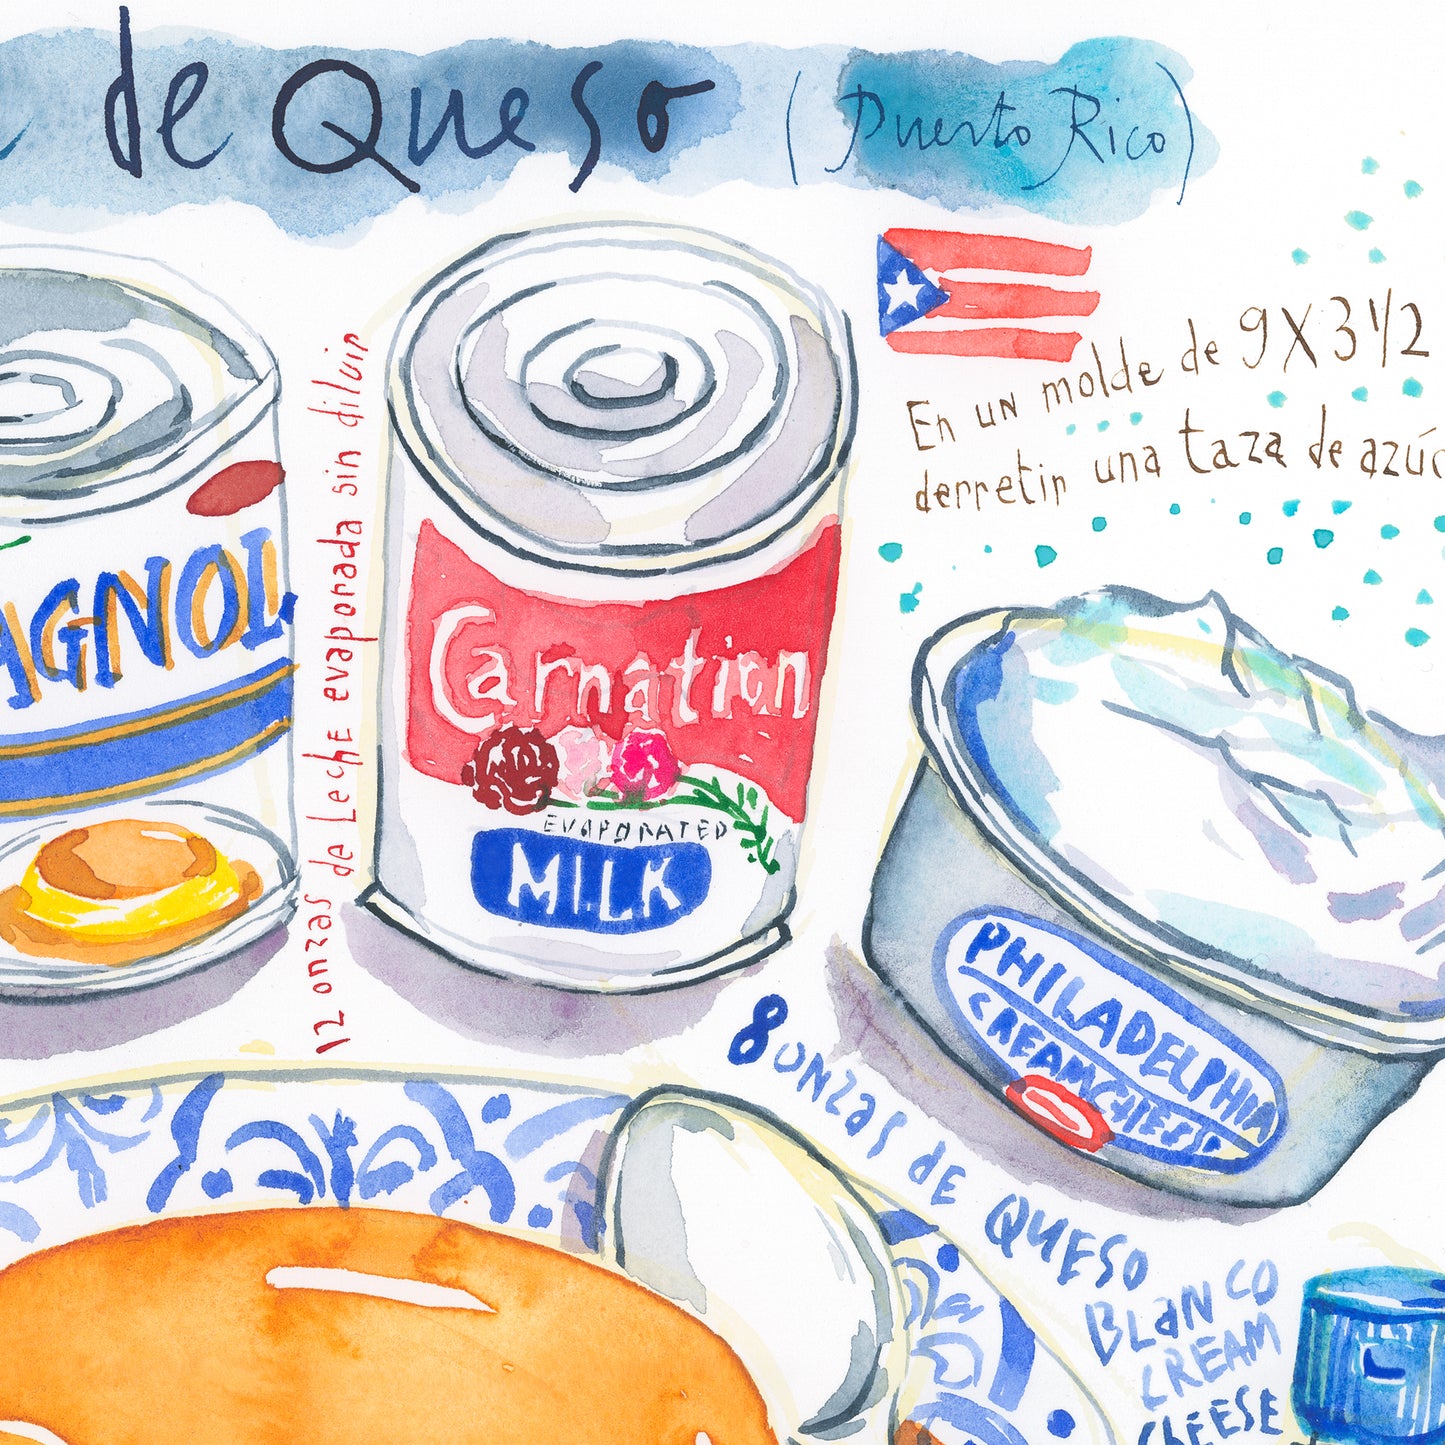 Puerto Rico Flan de Queso recipe. Original watercolor painting